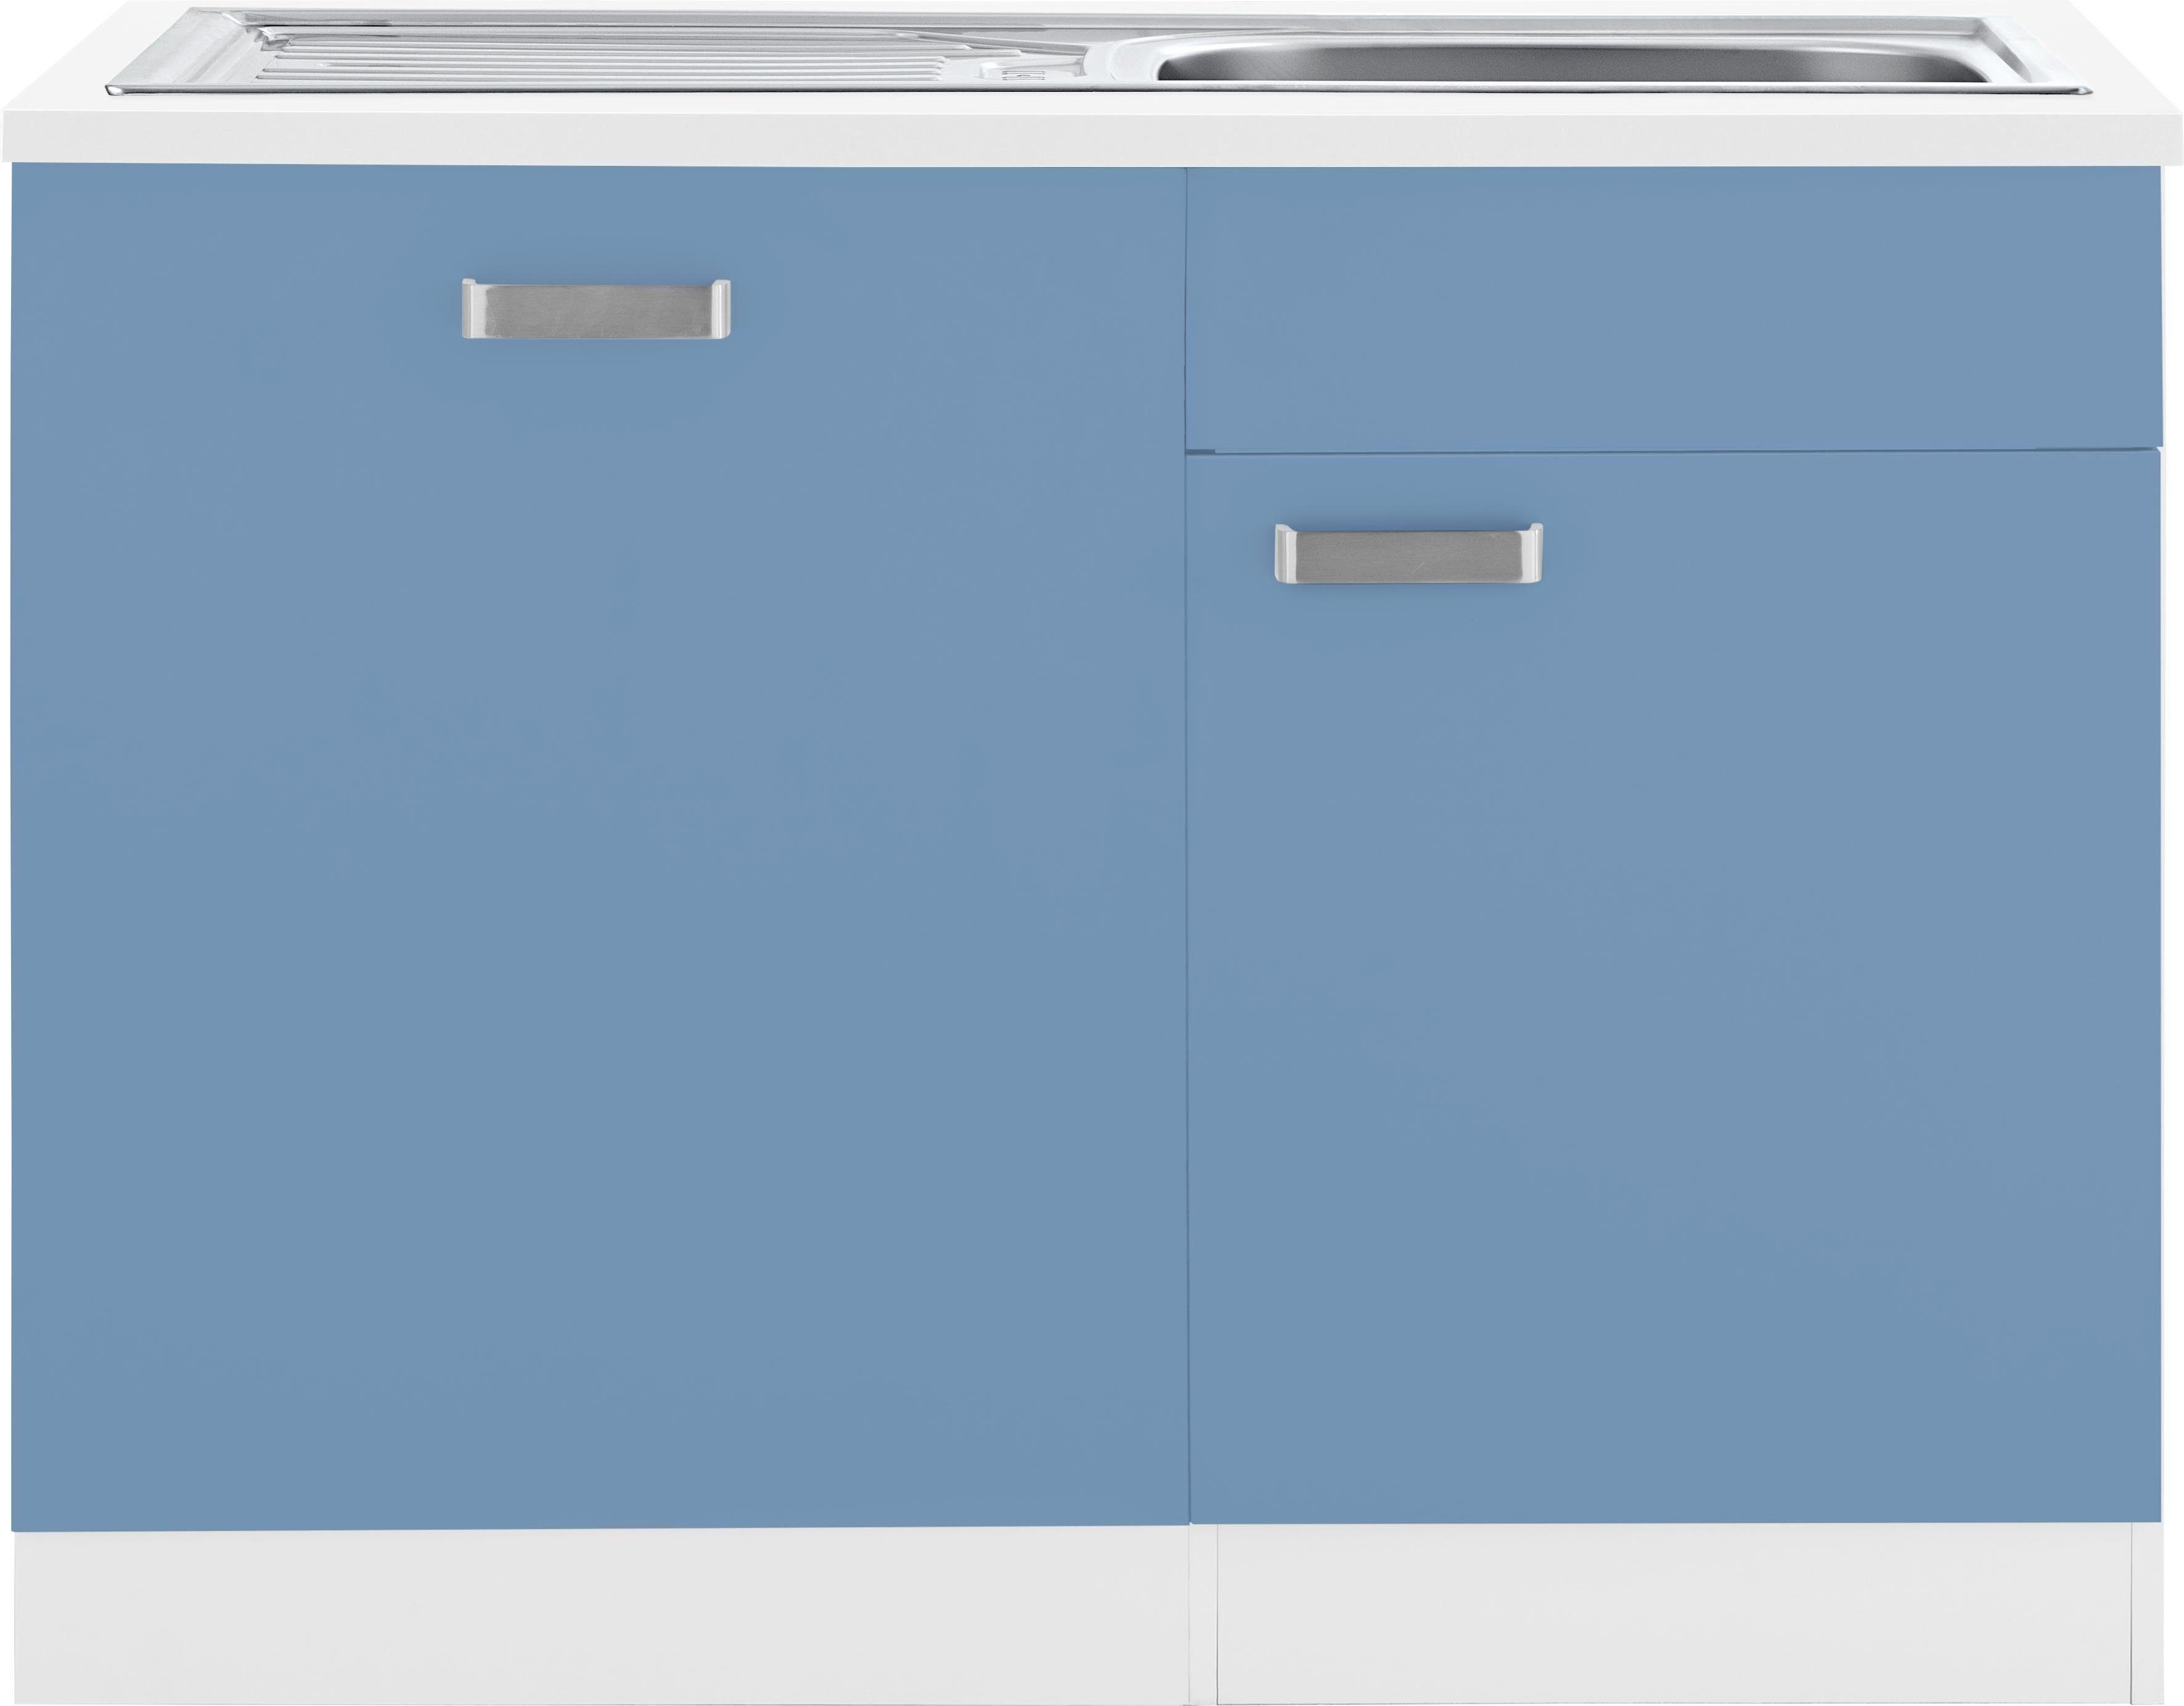 wiho Küchen Spülenschrank Husum 110 cm breit, inkl. Tür/Sockel für Geschirrspüler himmelblau/weiß